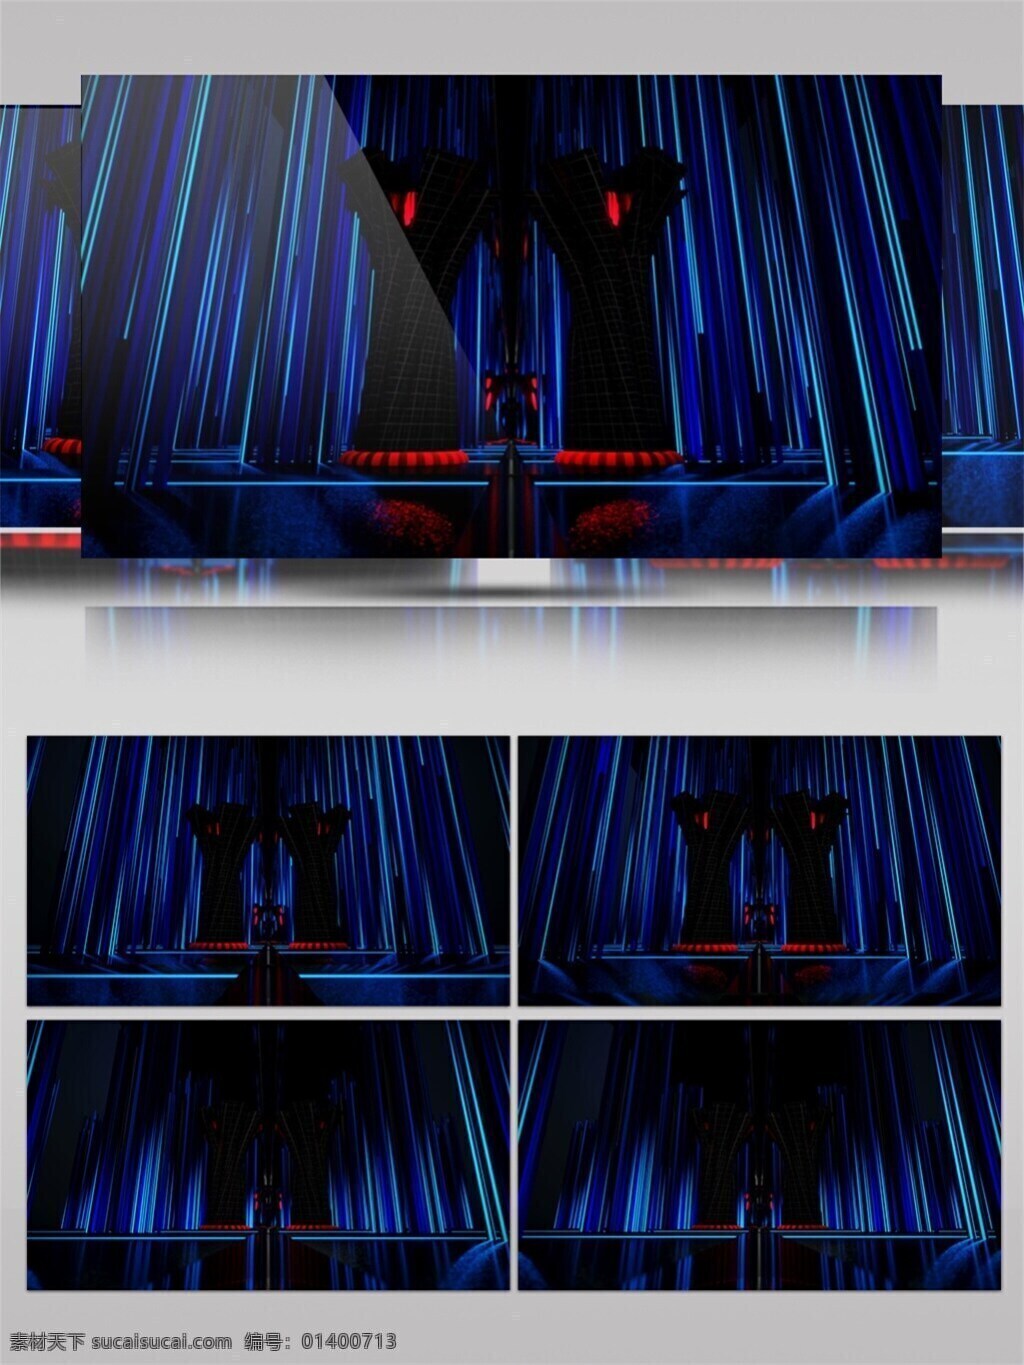 蓝色 瀑布 灯光 视频 3d视频素材 酒吧舞台 特效视频素材 晚会舞台背景 舞台灯光 艺术